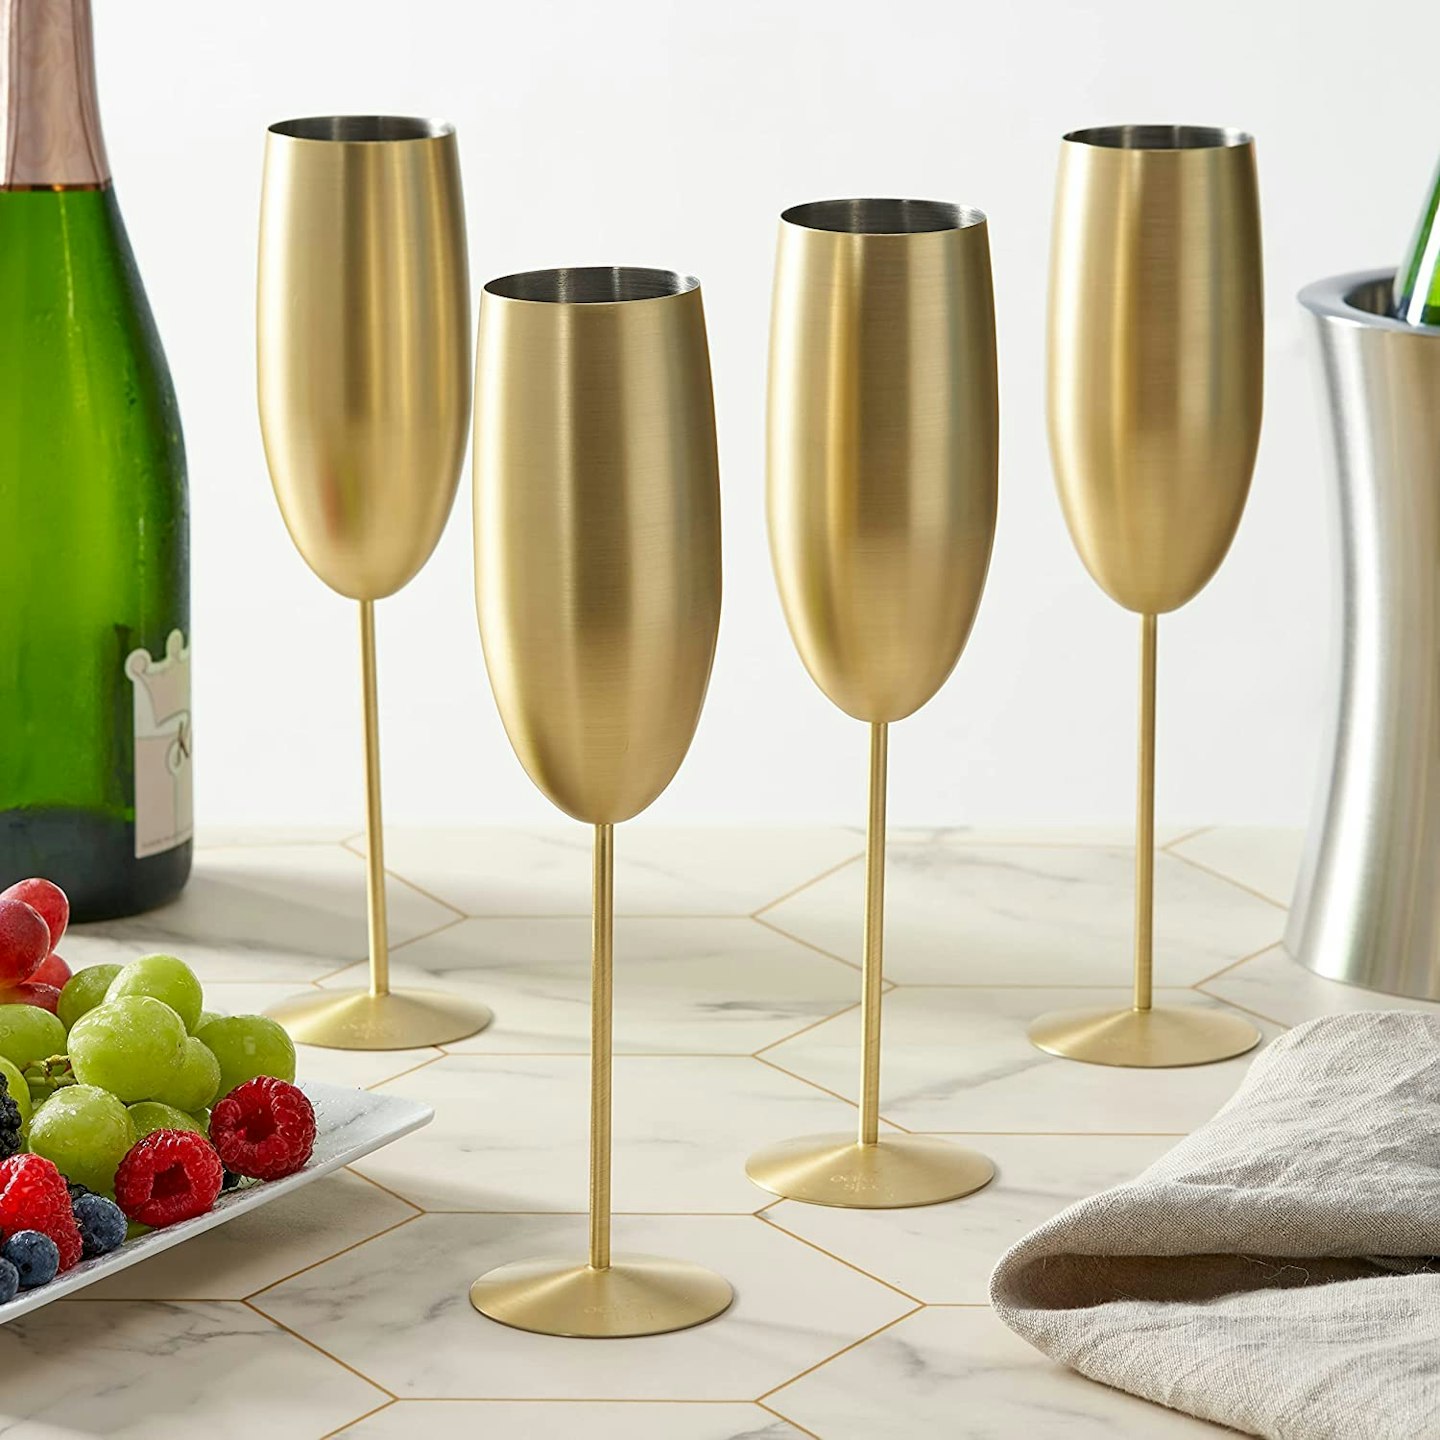 Oak & Steel - 4 Gold Champagne Flutes Gift Set